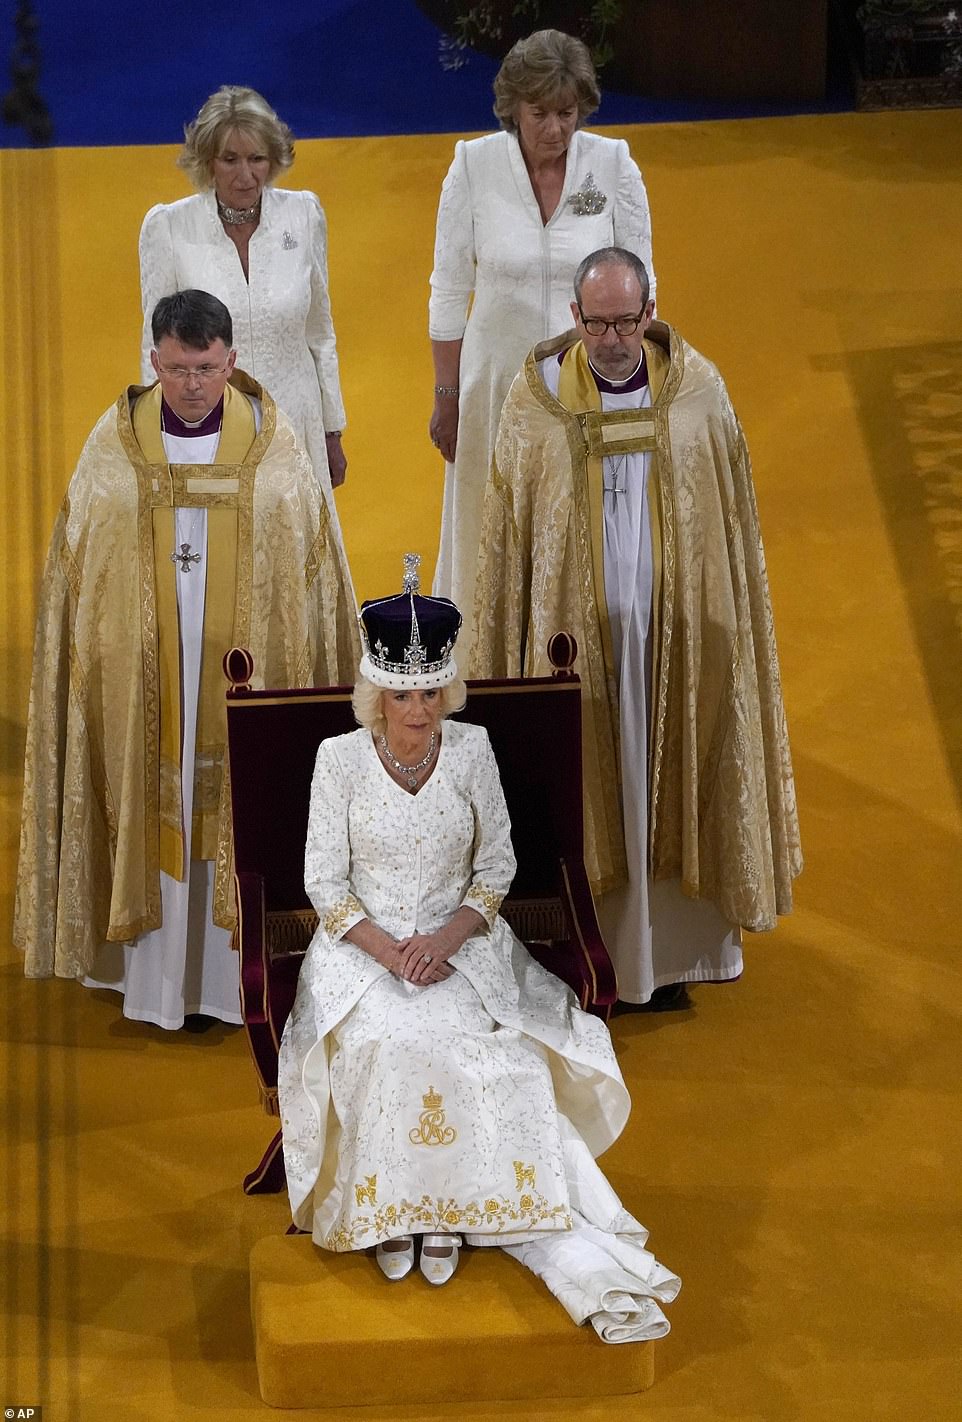 Queen Camilla looking regal after becoming Queen